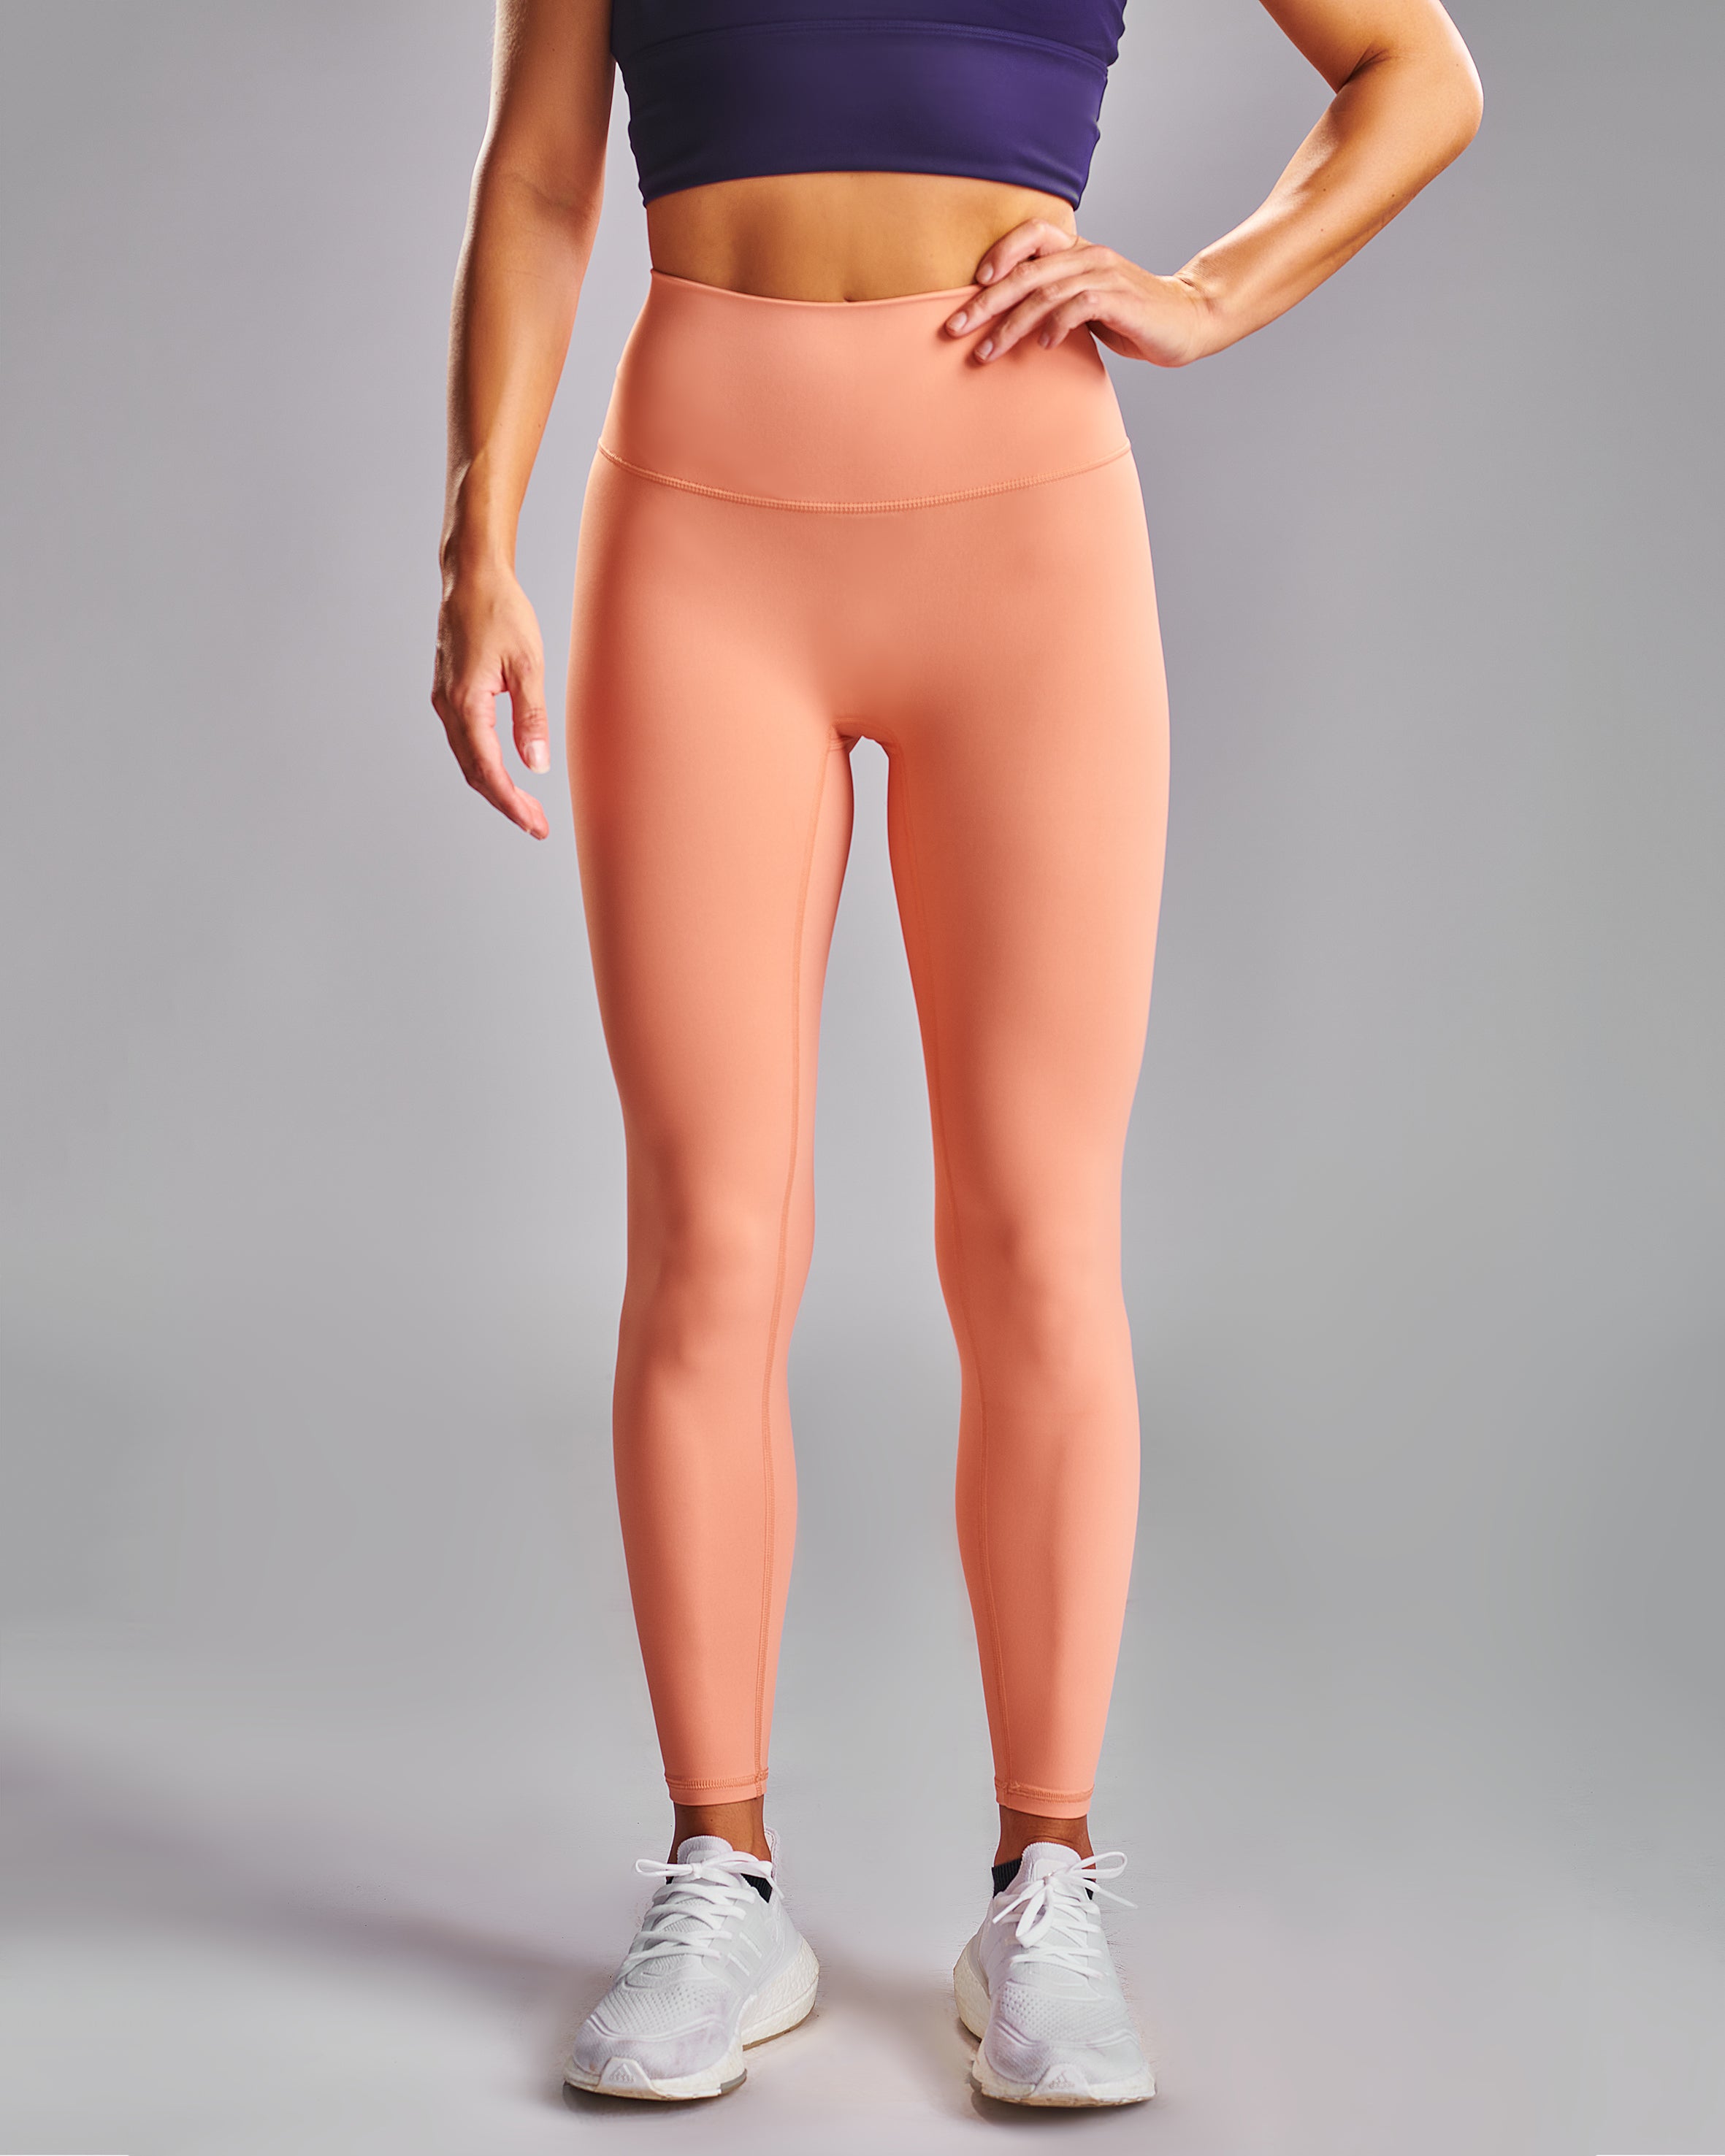 Align Leggings. Peach Ultralux fabric